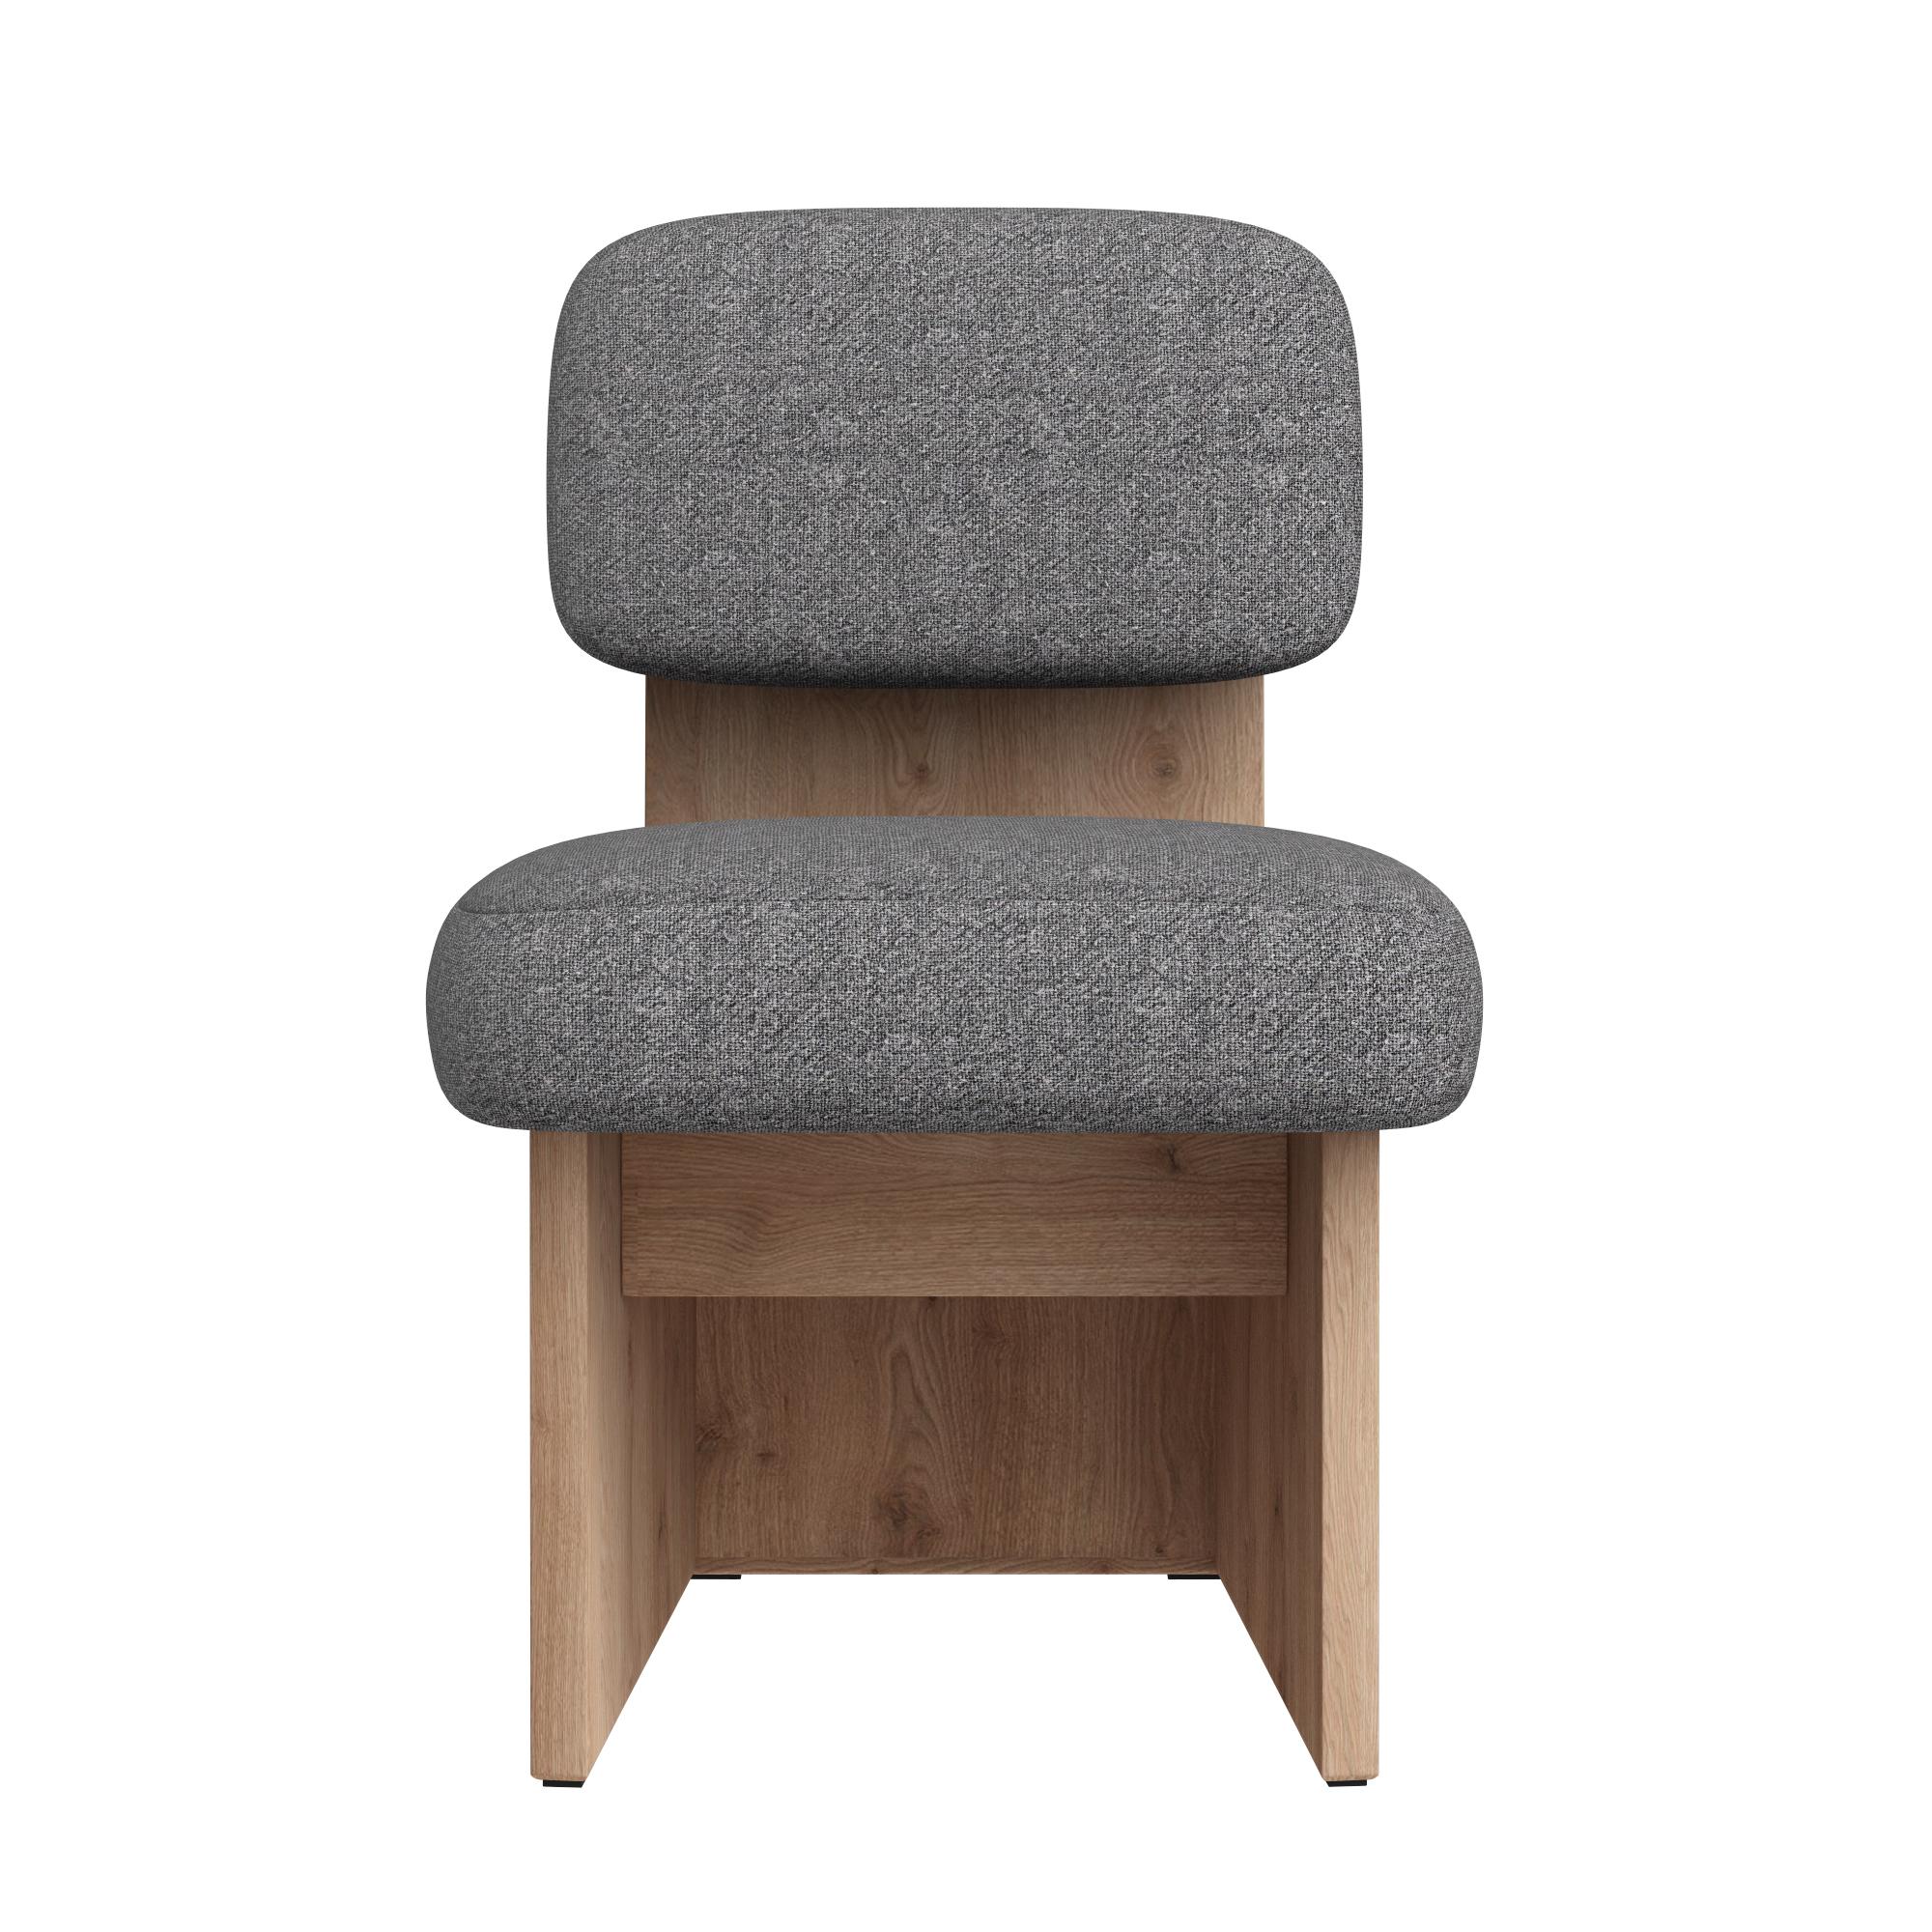 Die Härte und Symmetrie der Struktur ist das Hauptkonzept der Lever-Kollektion. Der Stuhl besteht aus Holzpaneelen, die ein weiches, übergroßes Kissen umschließen und so ein harmonisches Design mit minimalistischer Silhouette schaffen. Handgefertigt